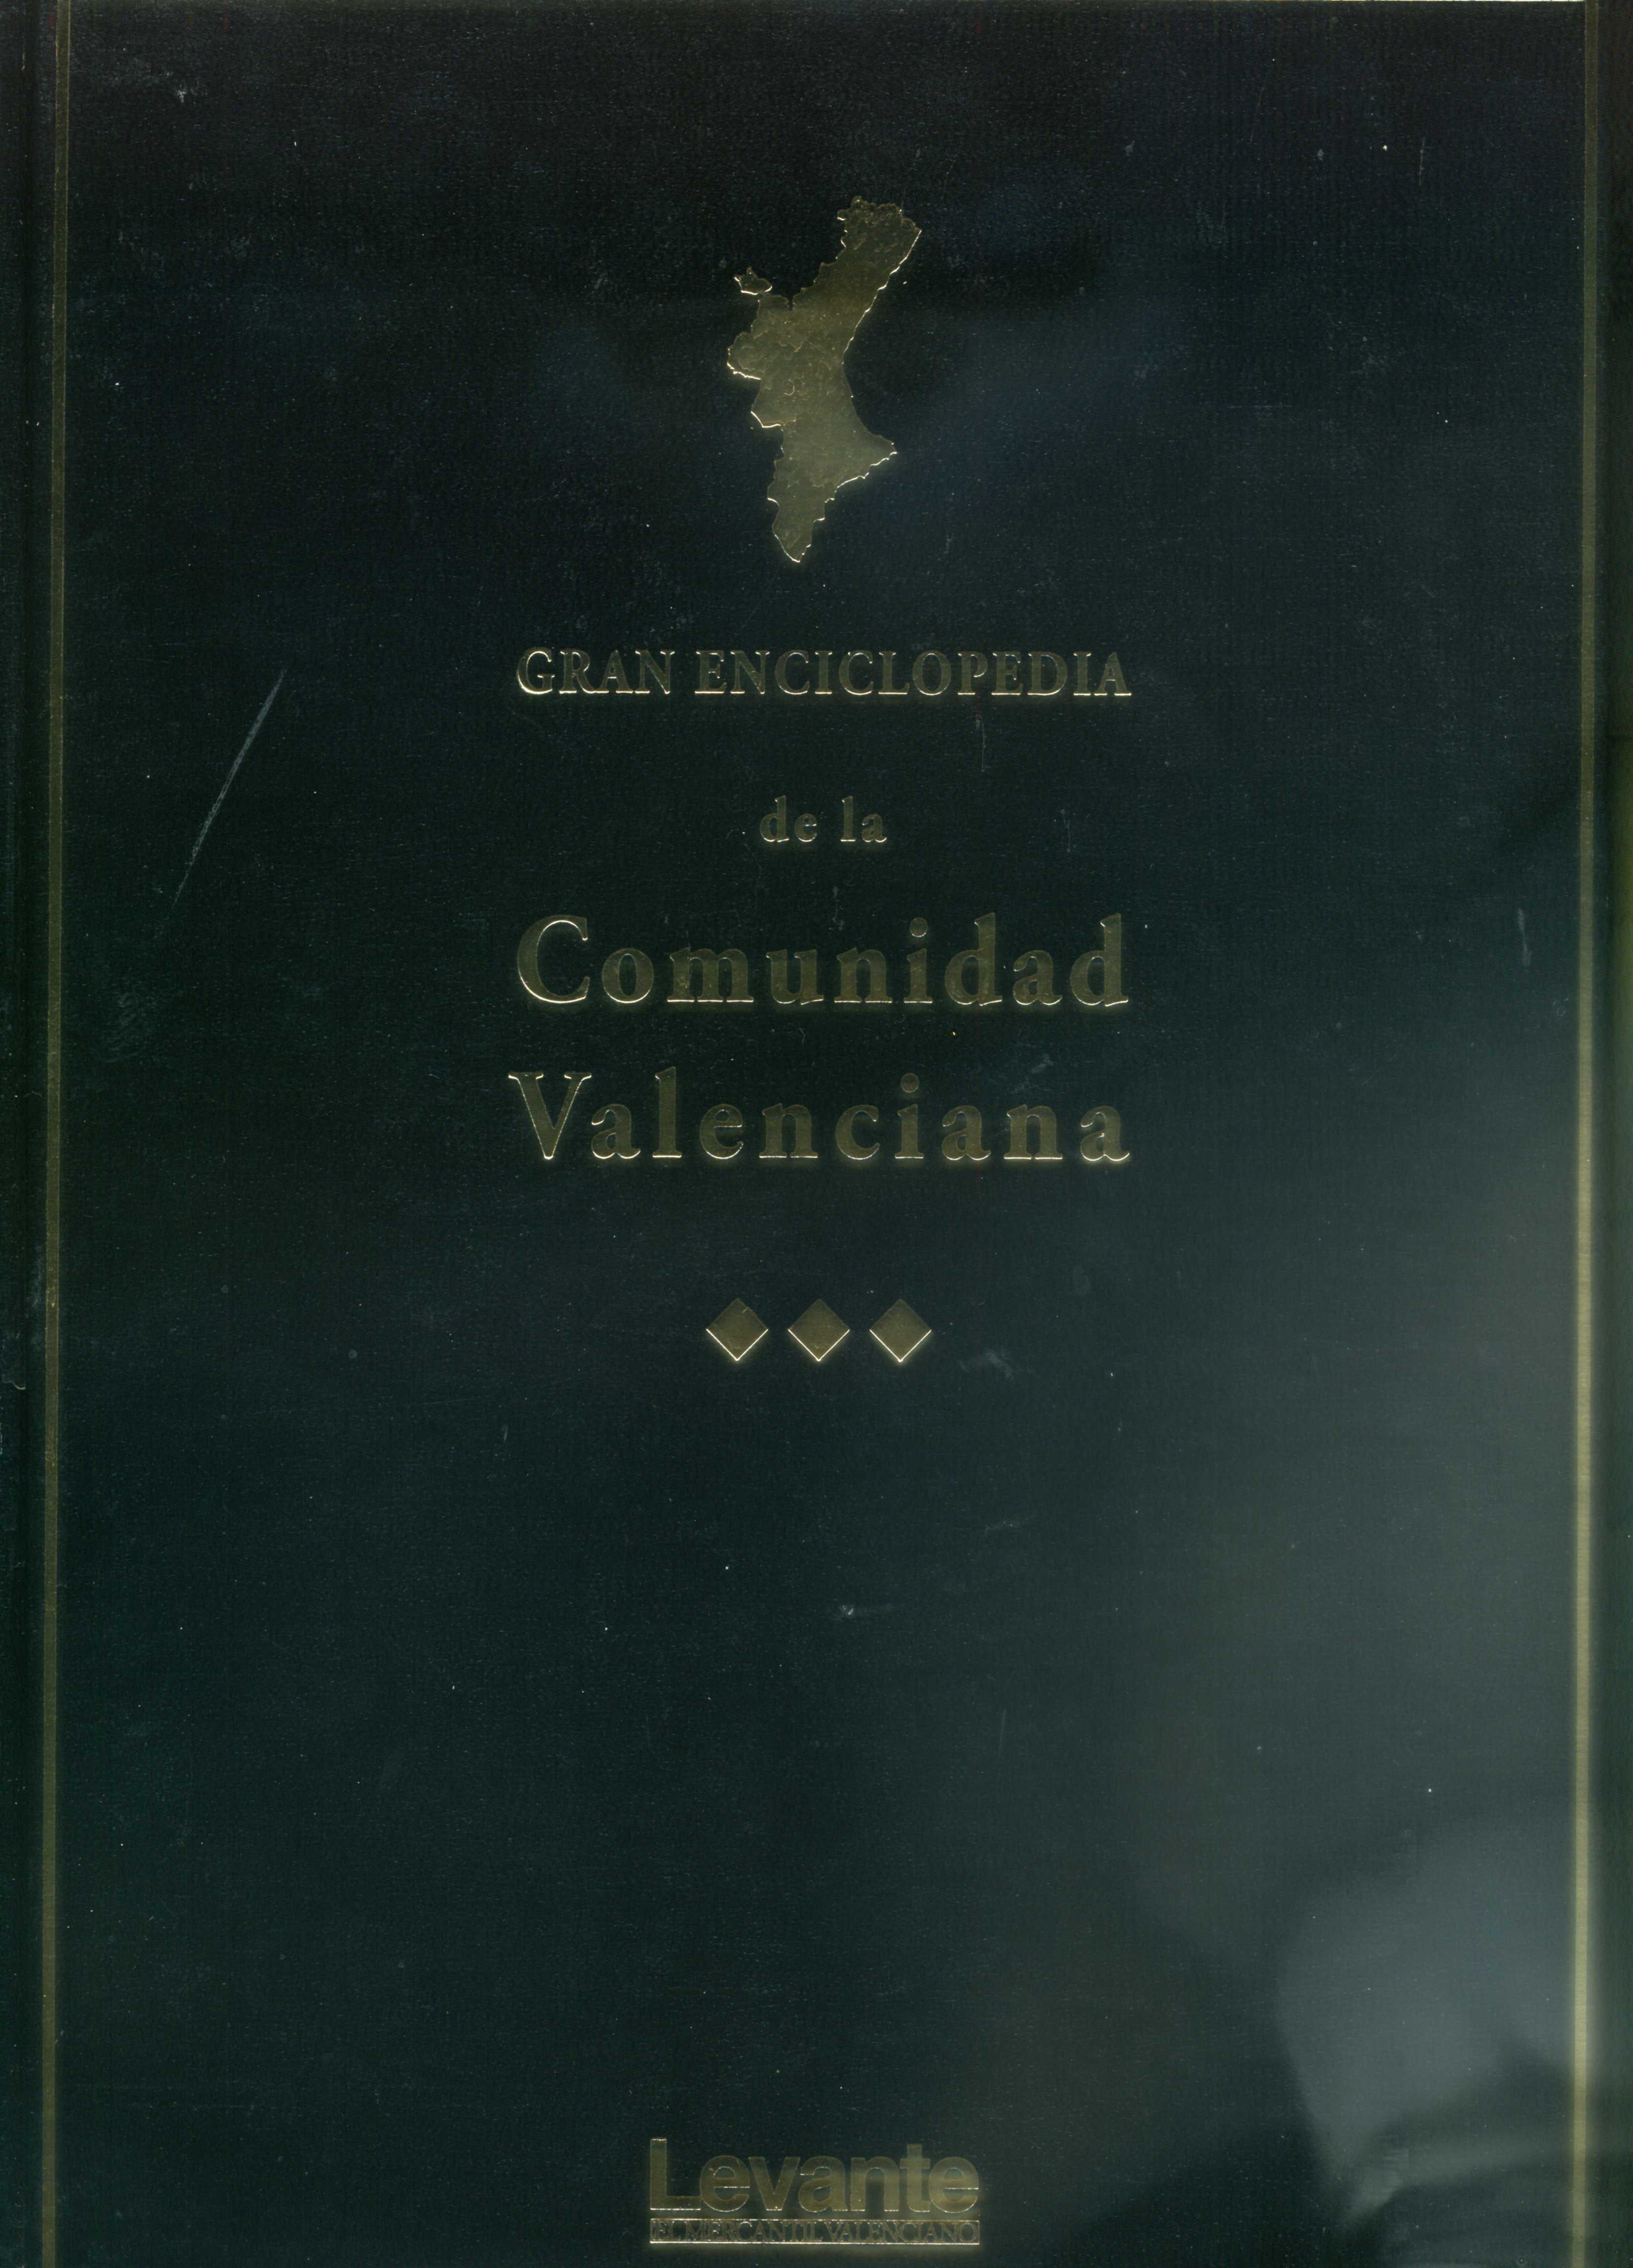 Gran Enciclopedia de la Comunidad Valenciana-13 (Pop-Rib))